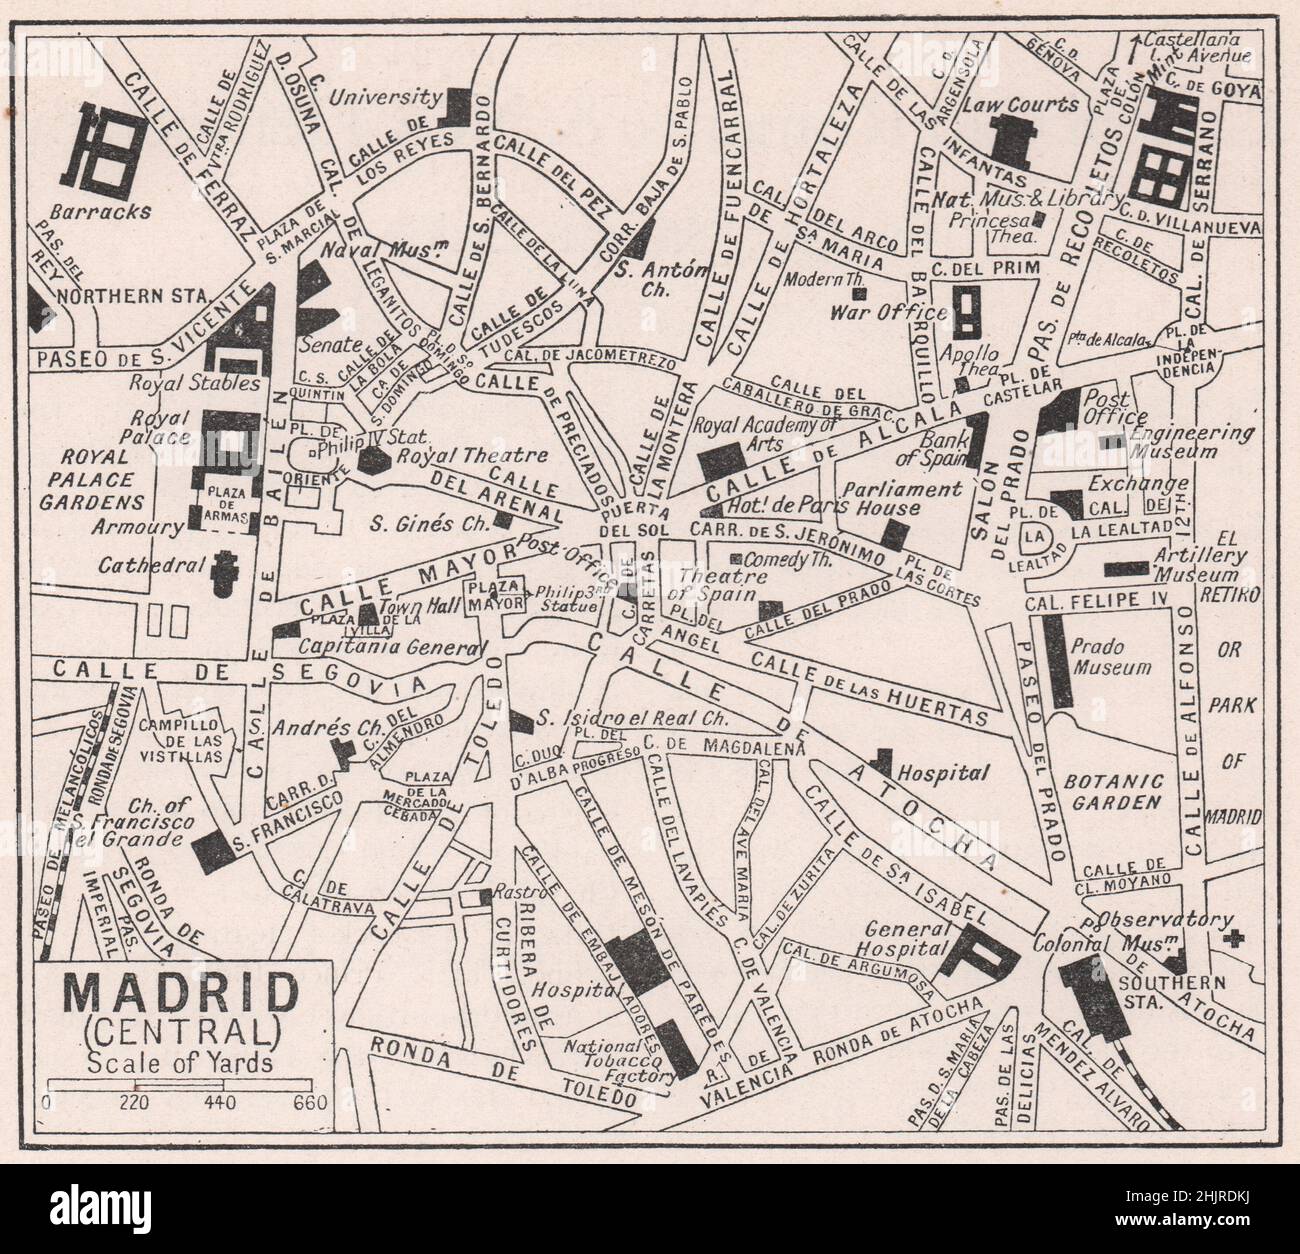 Piazze e vie di transito della maestosa capitale spagnola. Madrid (mappa 1923) Foto Stock